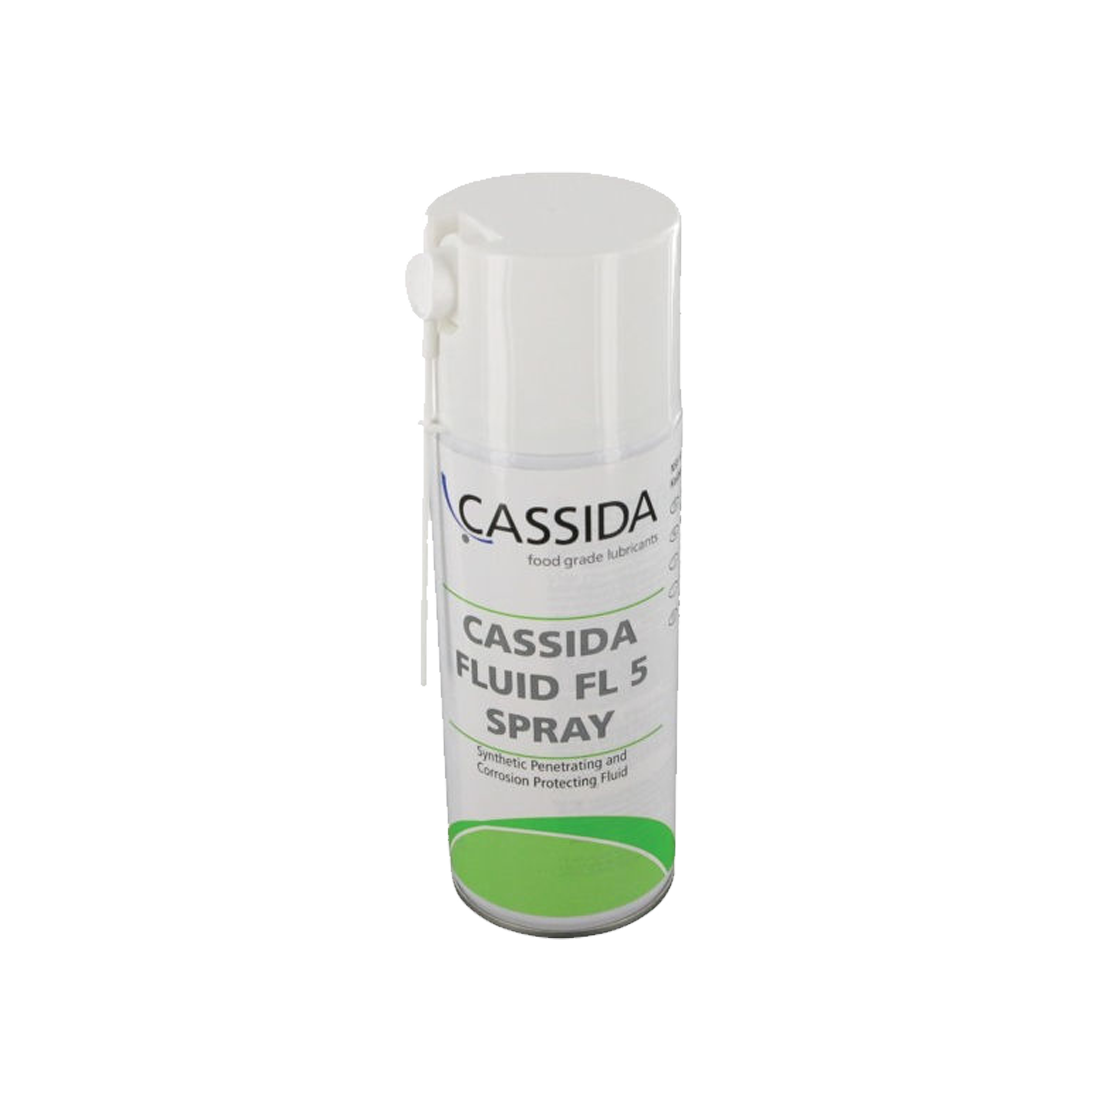 Syntetiskkedjeolja Shell Cassida Fluid FL 5 Spray, 400ml